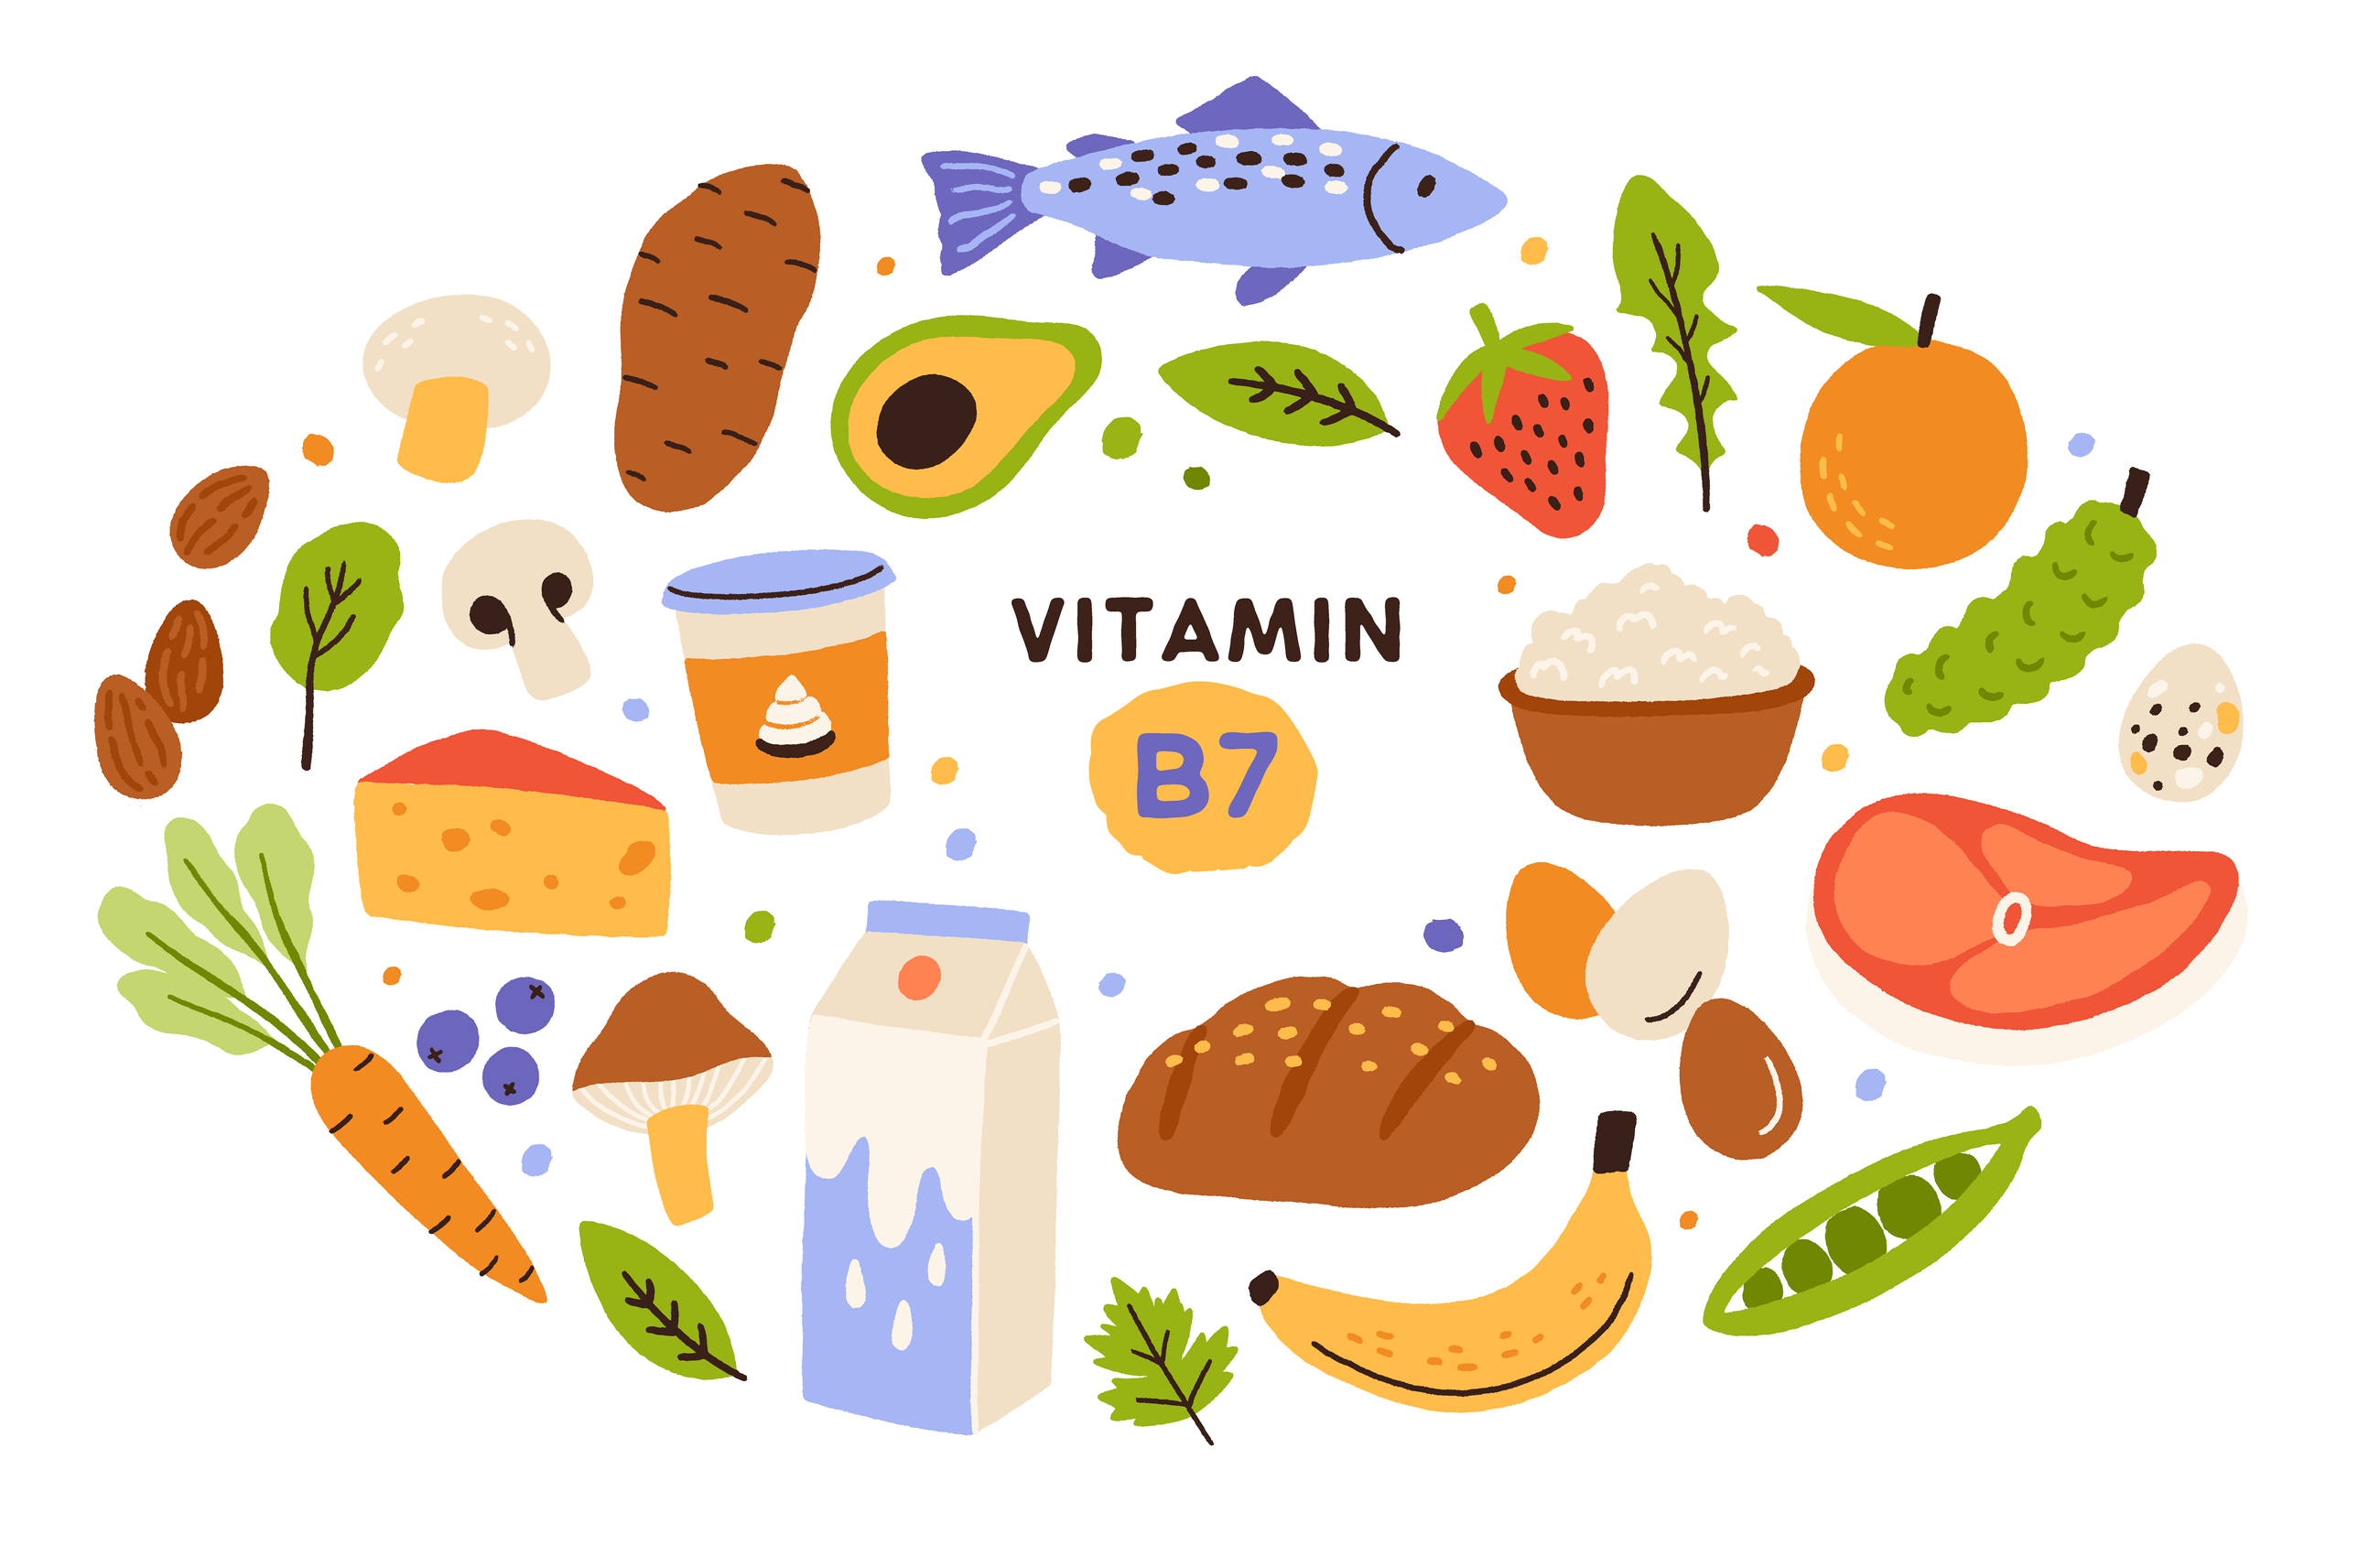 eggs, legumes, nuts, seeds, prenatal nutrition, mushrooms,sweet potatoes, nutrition, healthy eating, pregnancy